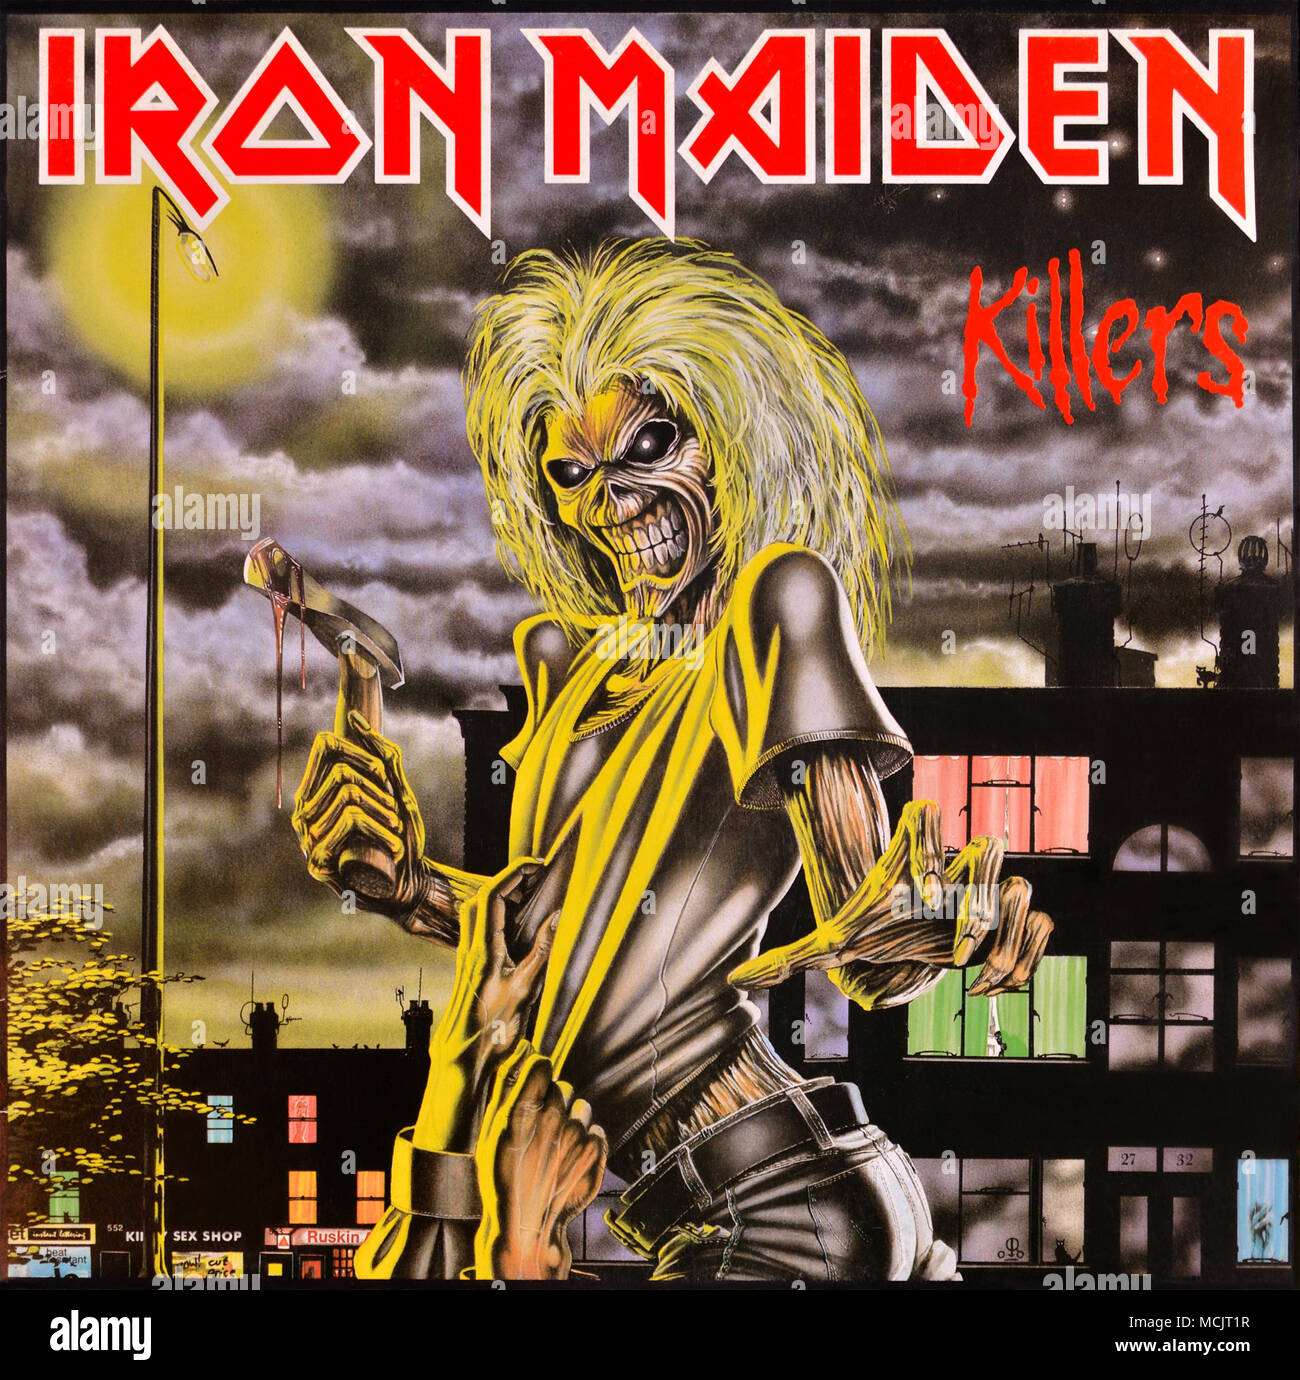 Iron Maiden - copertina originale in vinile - Killers - 1986 Foto Stock